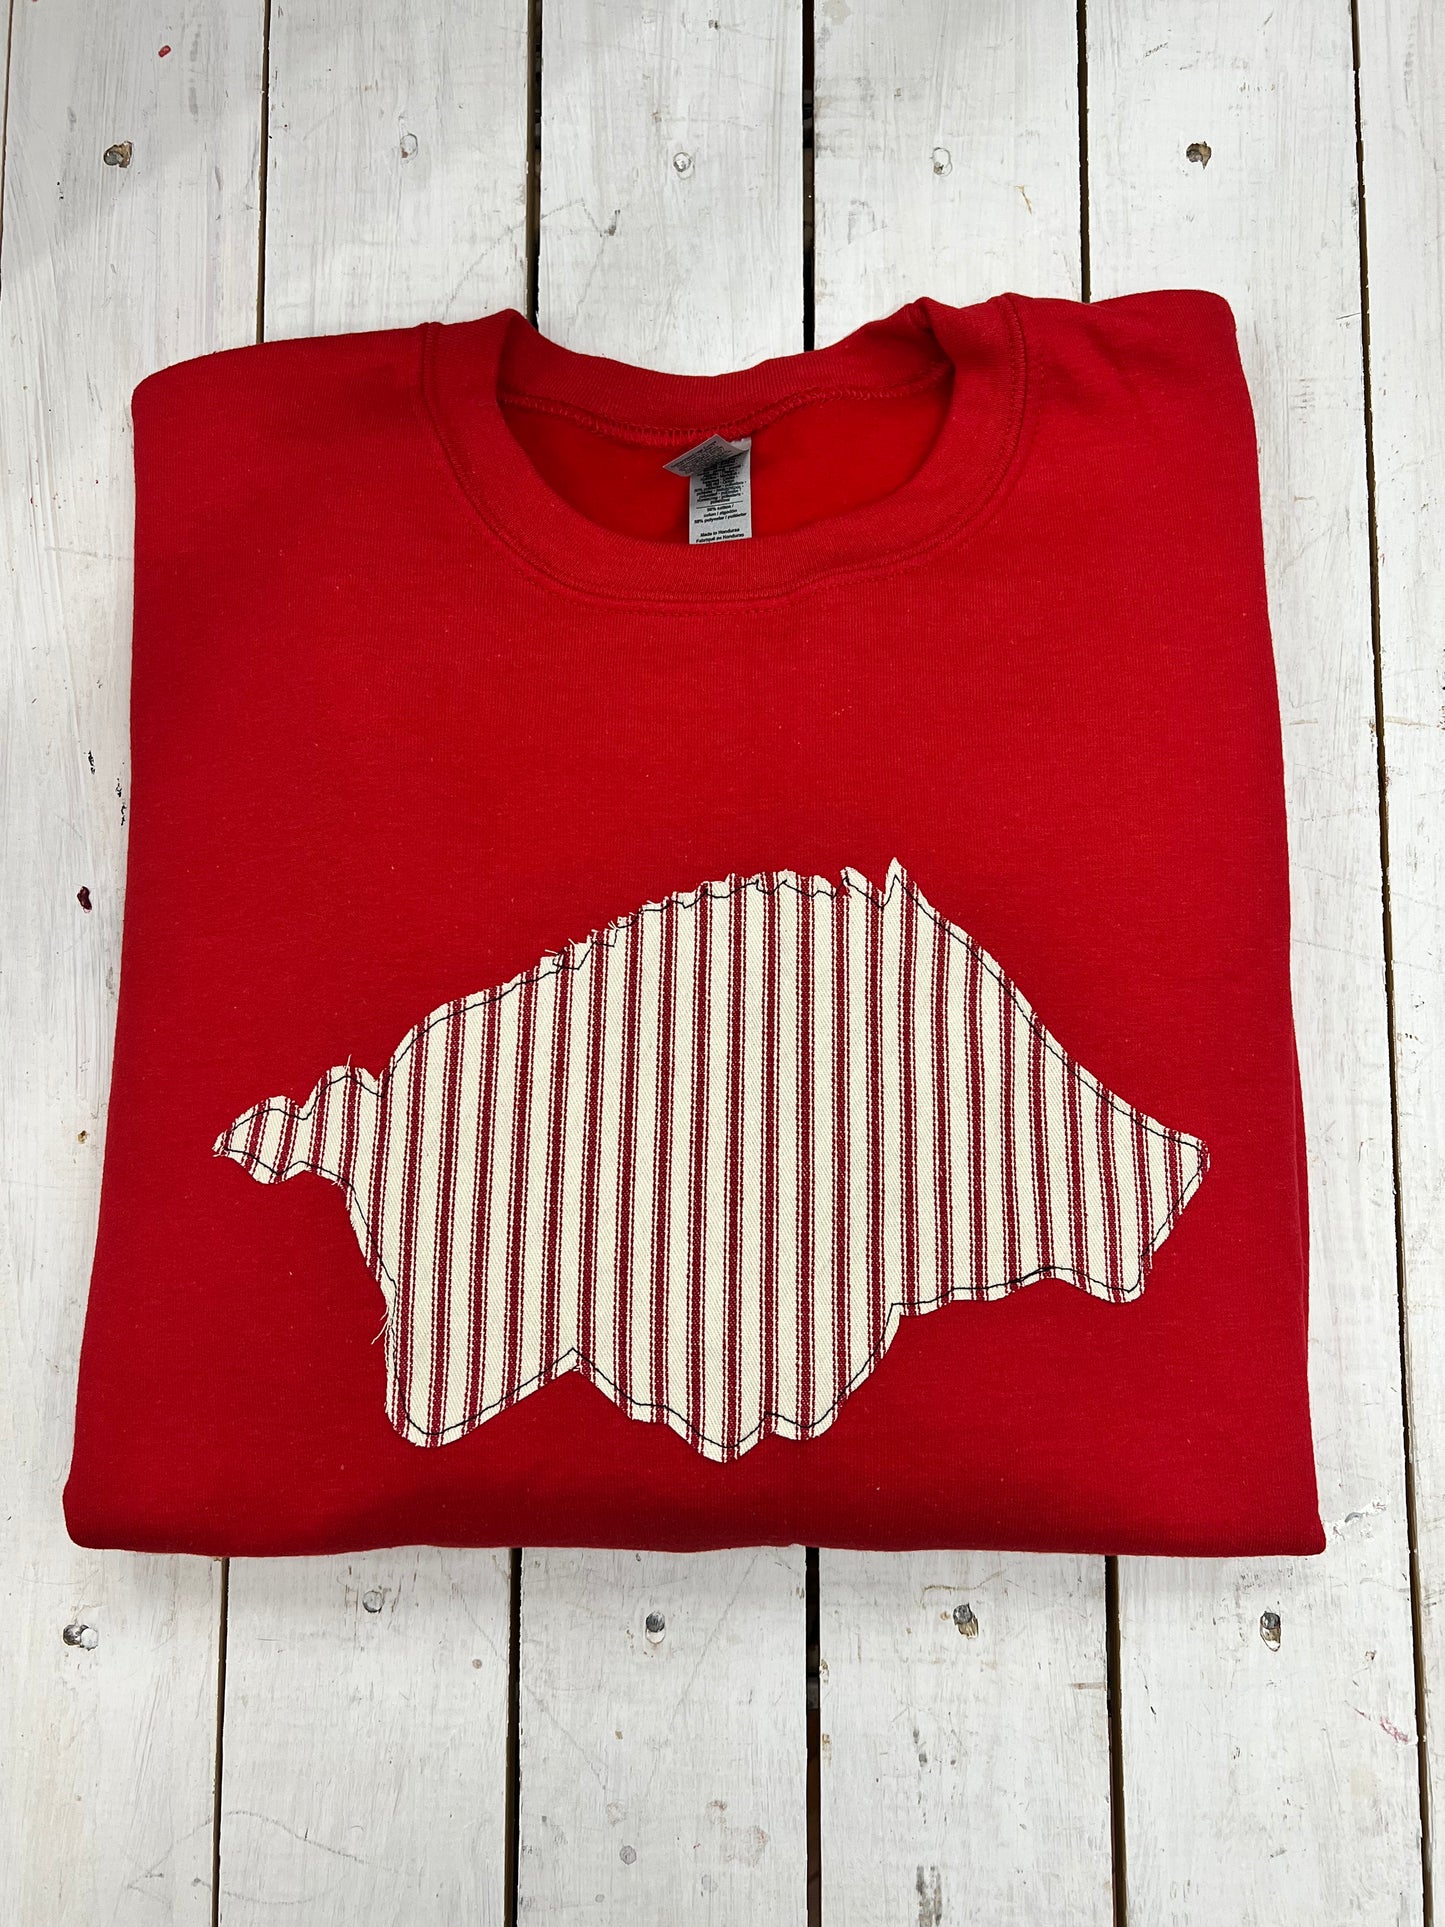 Stitched Razorback Sweatshirt - Red